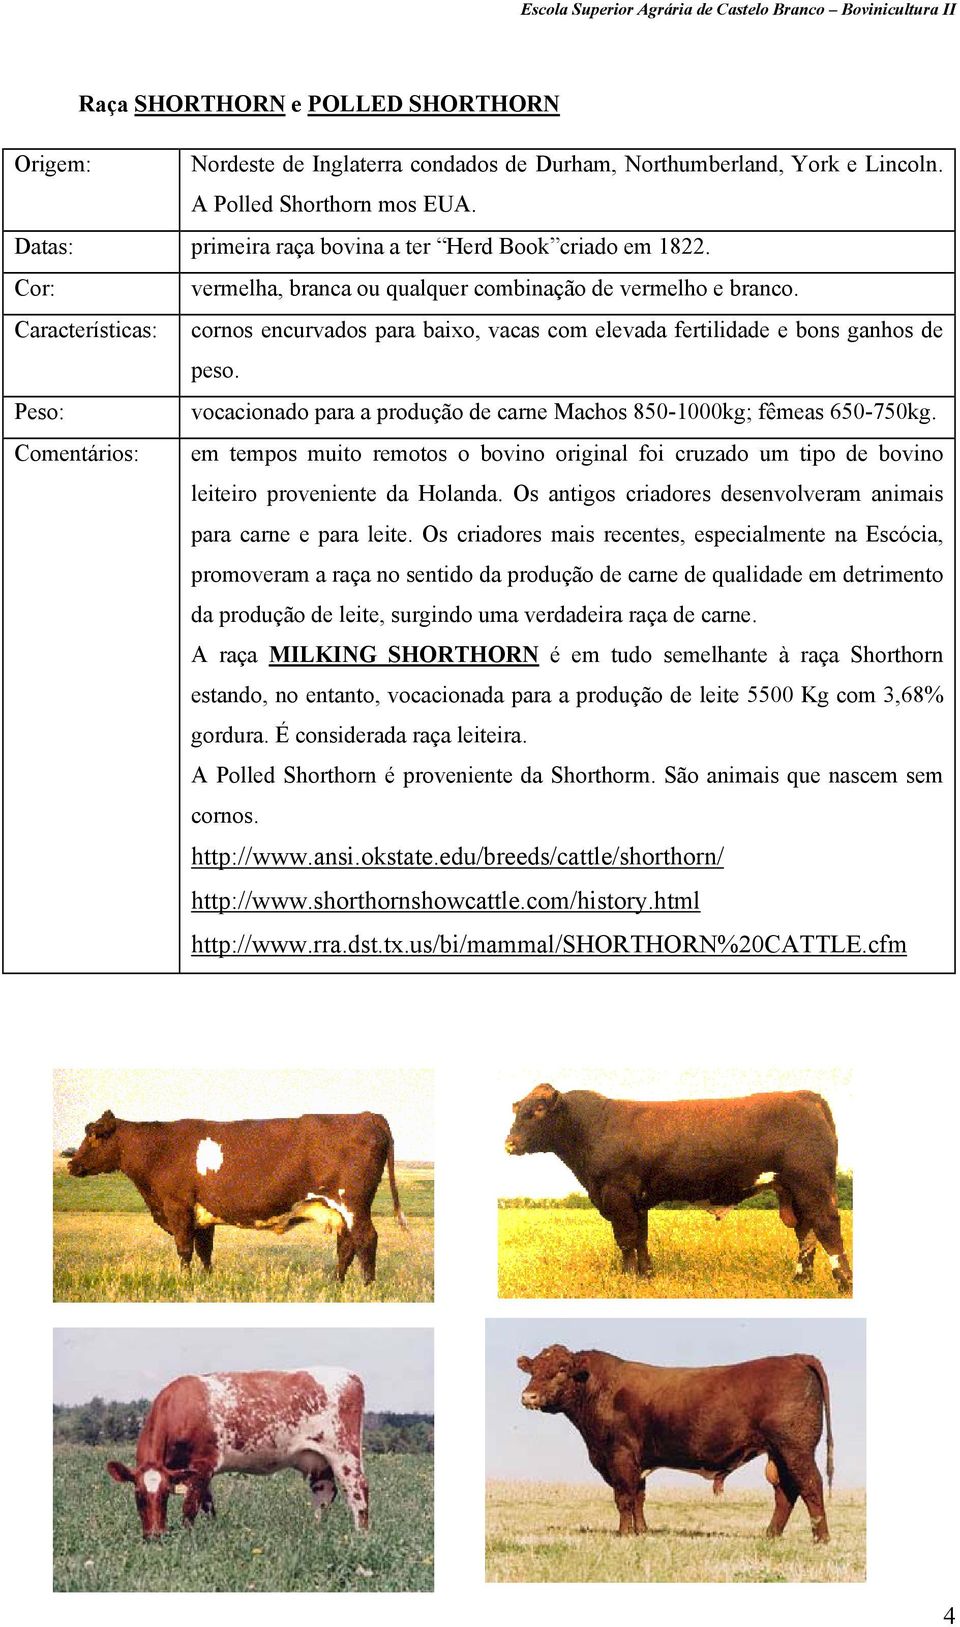 vocacionado para a produção de carne Machos 850-1000kg; fêmeas 650-750kg. Comentários: em tempos muito remotos o bovino original foi cruzado um tipo de bovino leiteiro proveniente da Holanda.